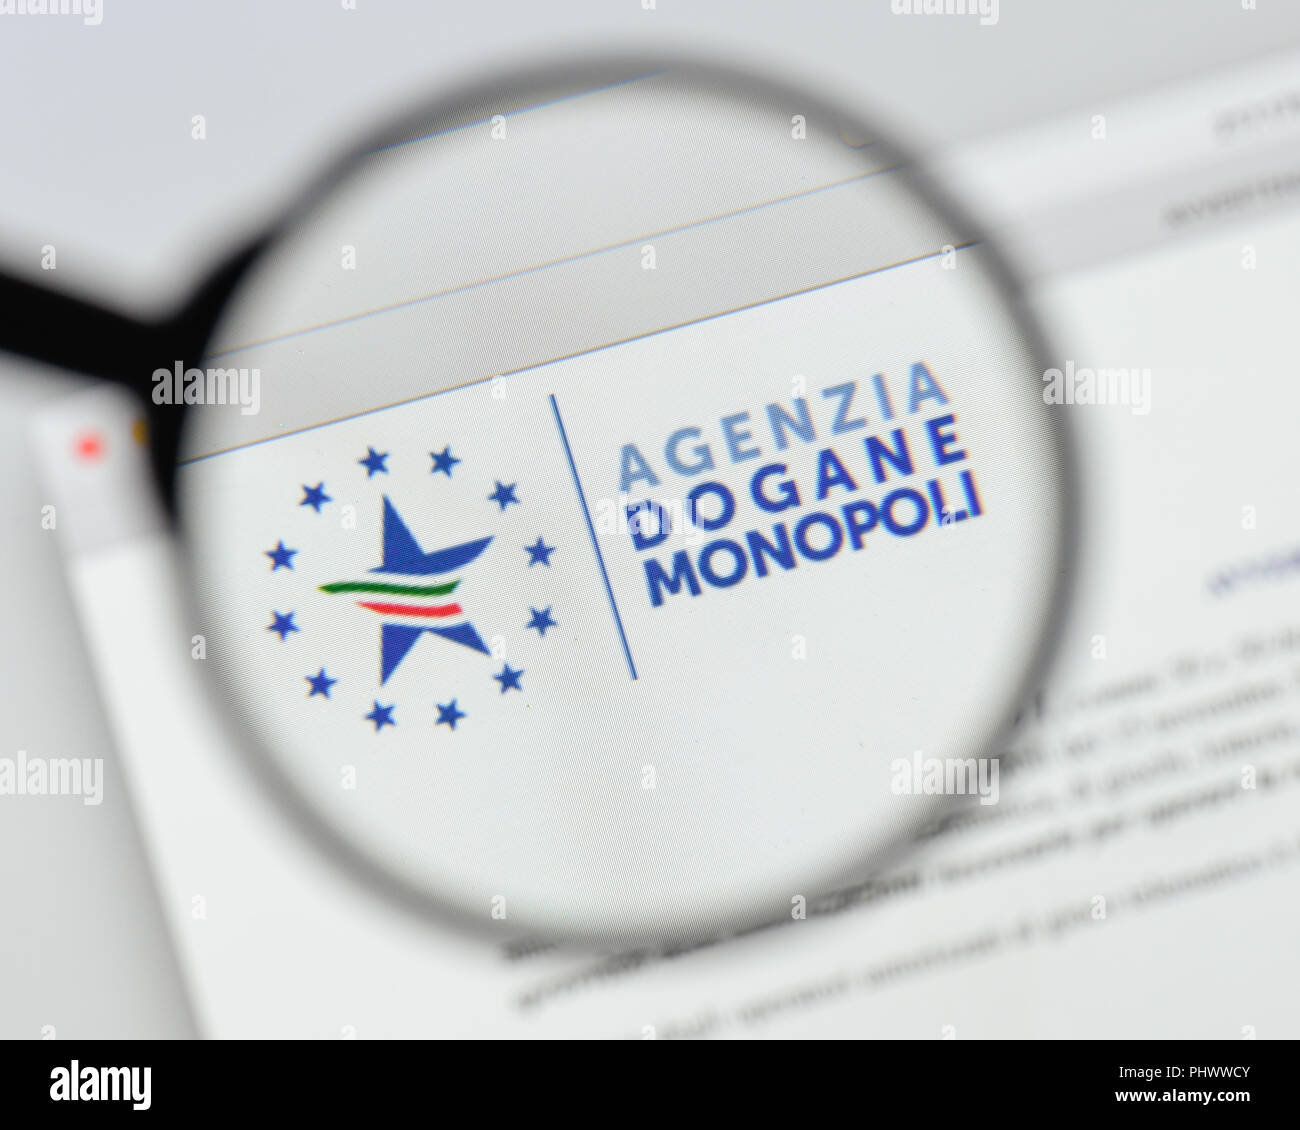 Milan, Italy - August 20, 2018: agenzia dogane e monopoli website homepage. agenzia dogane e monopoli logo visible. Stock Photo